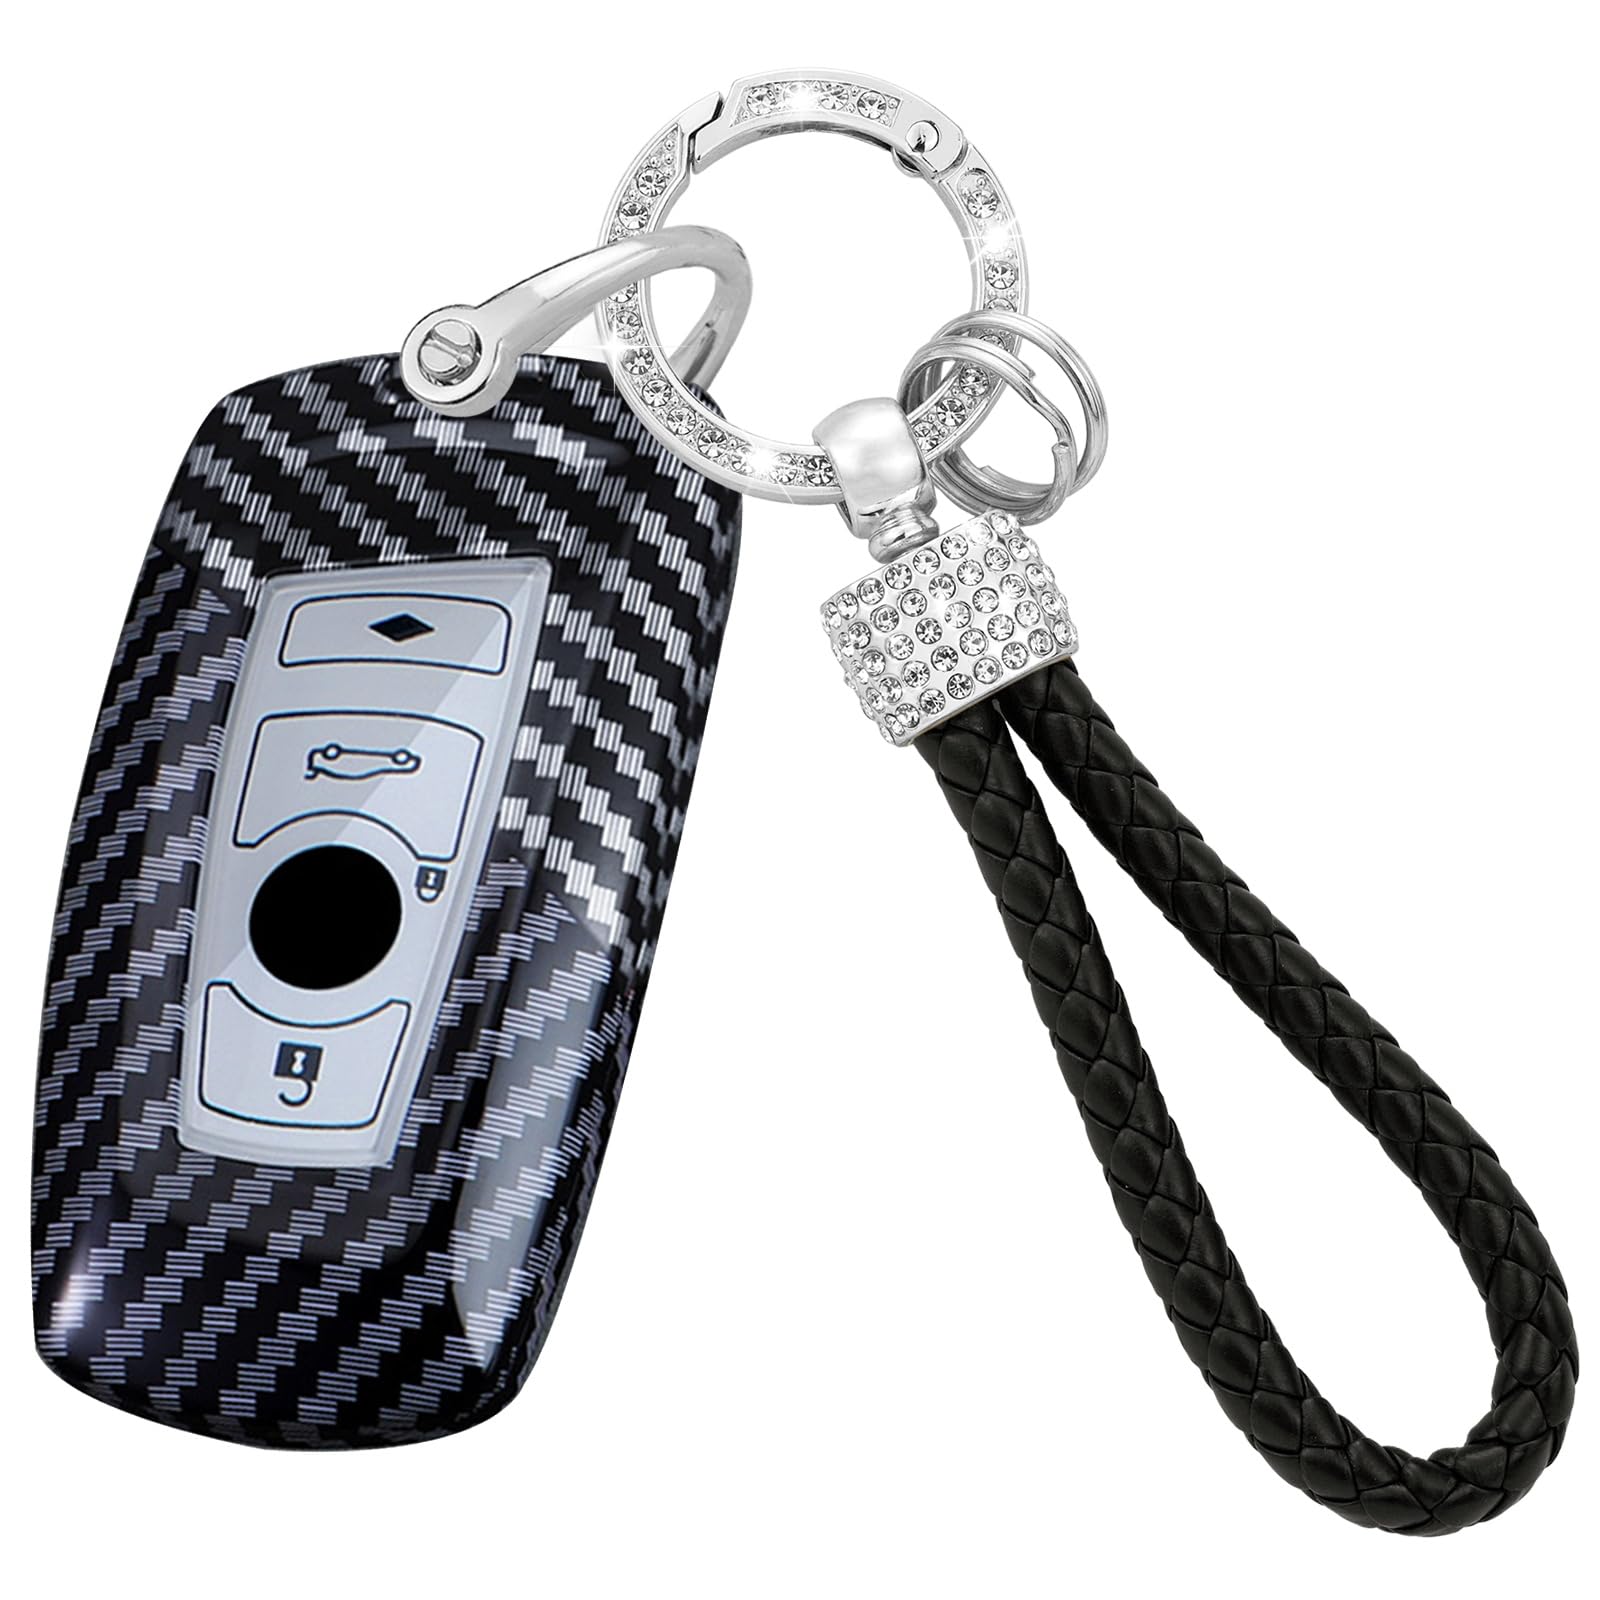 TECART Smart Funkschlüssel Cover Schlüssel Gehäuse Passt für BMW 1 2 3 4 5 6 7 Serie F35 F22 X3 F25 F20 F22 F30 F10 F11 F06 F01 Mit Diamant Schlüsselanhänger Schlüssel PC 4 Tasten-Schwarz Weiß von TECART